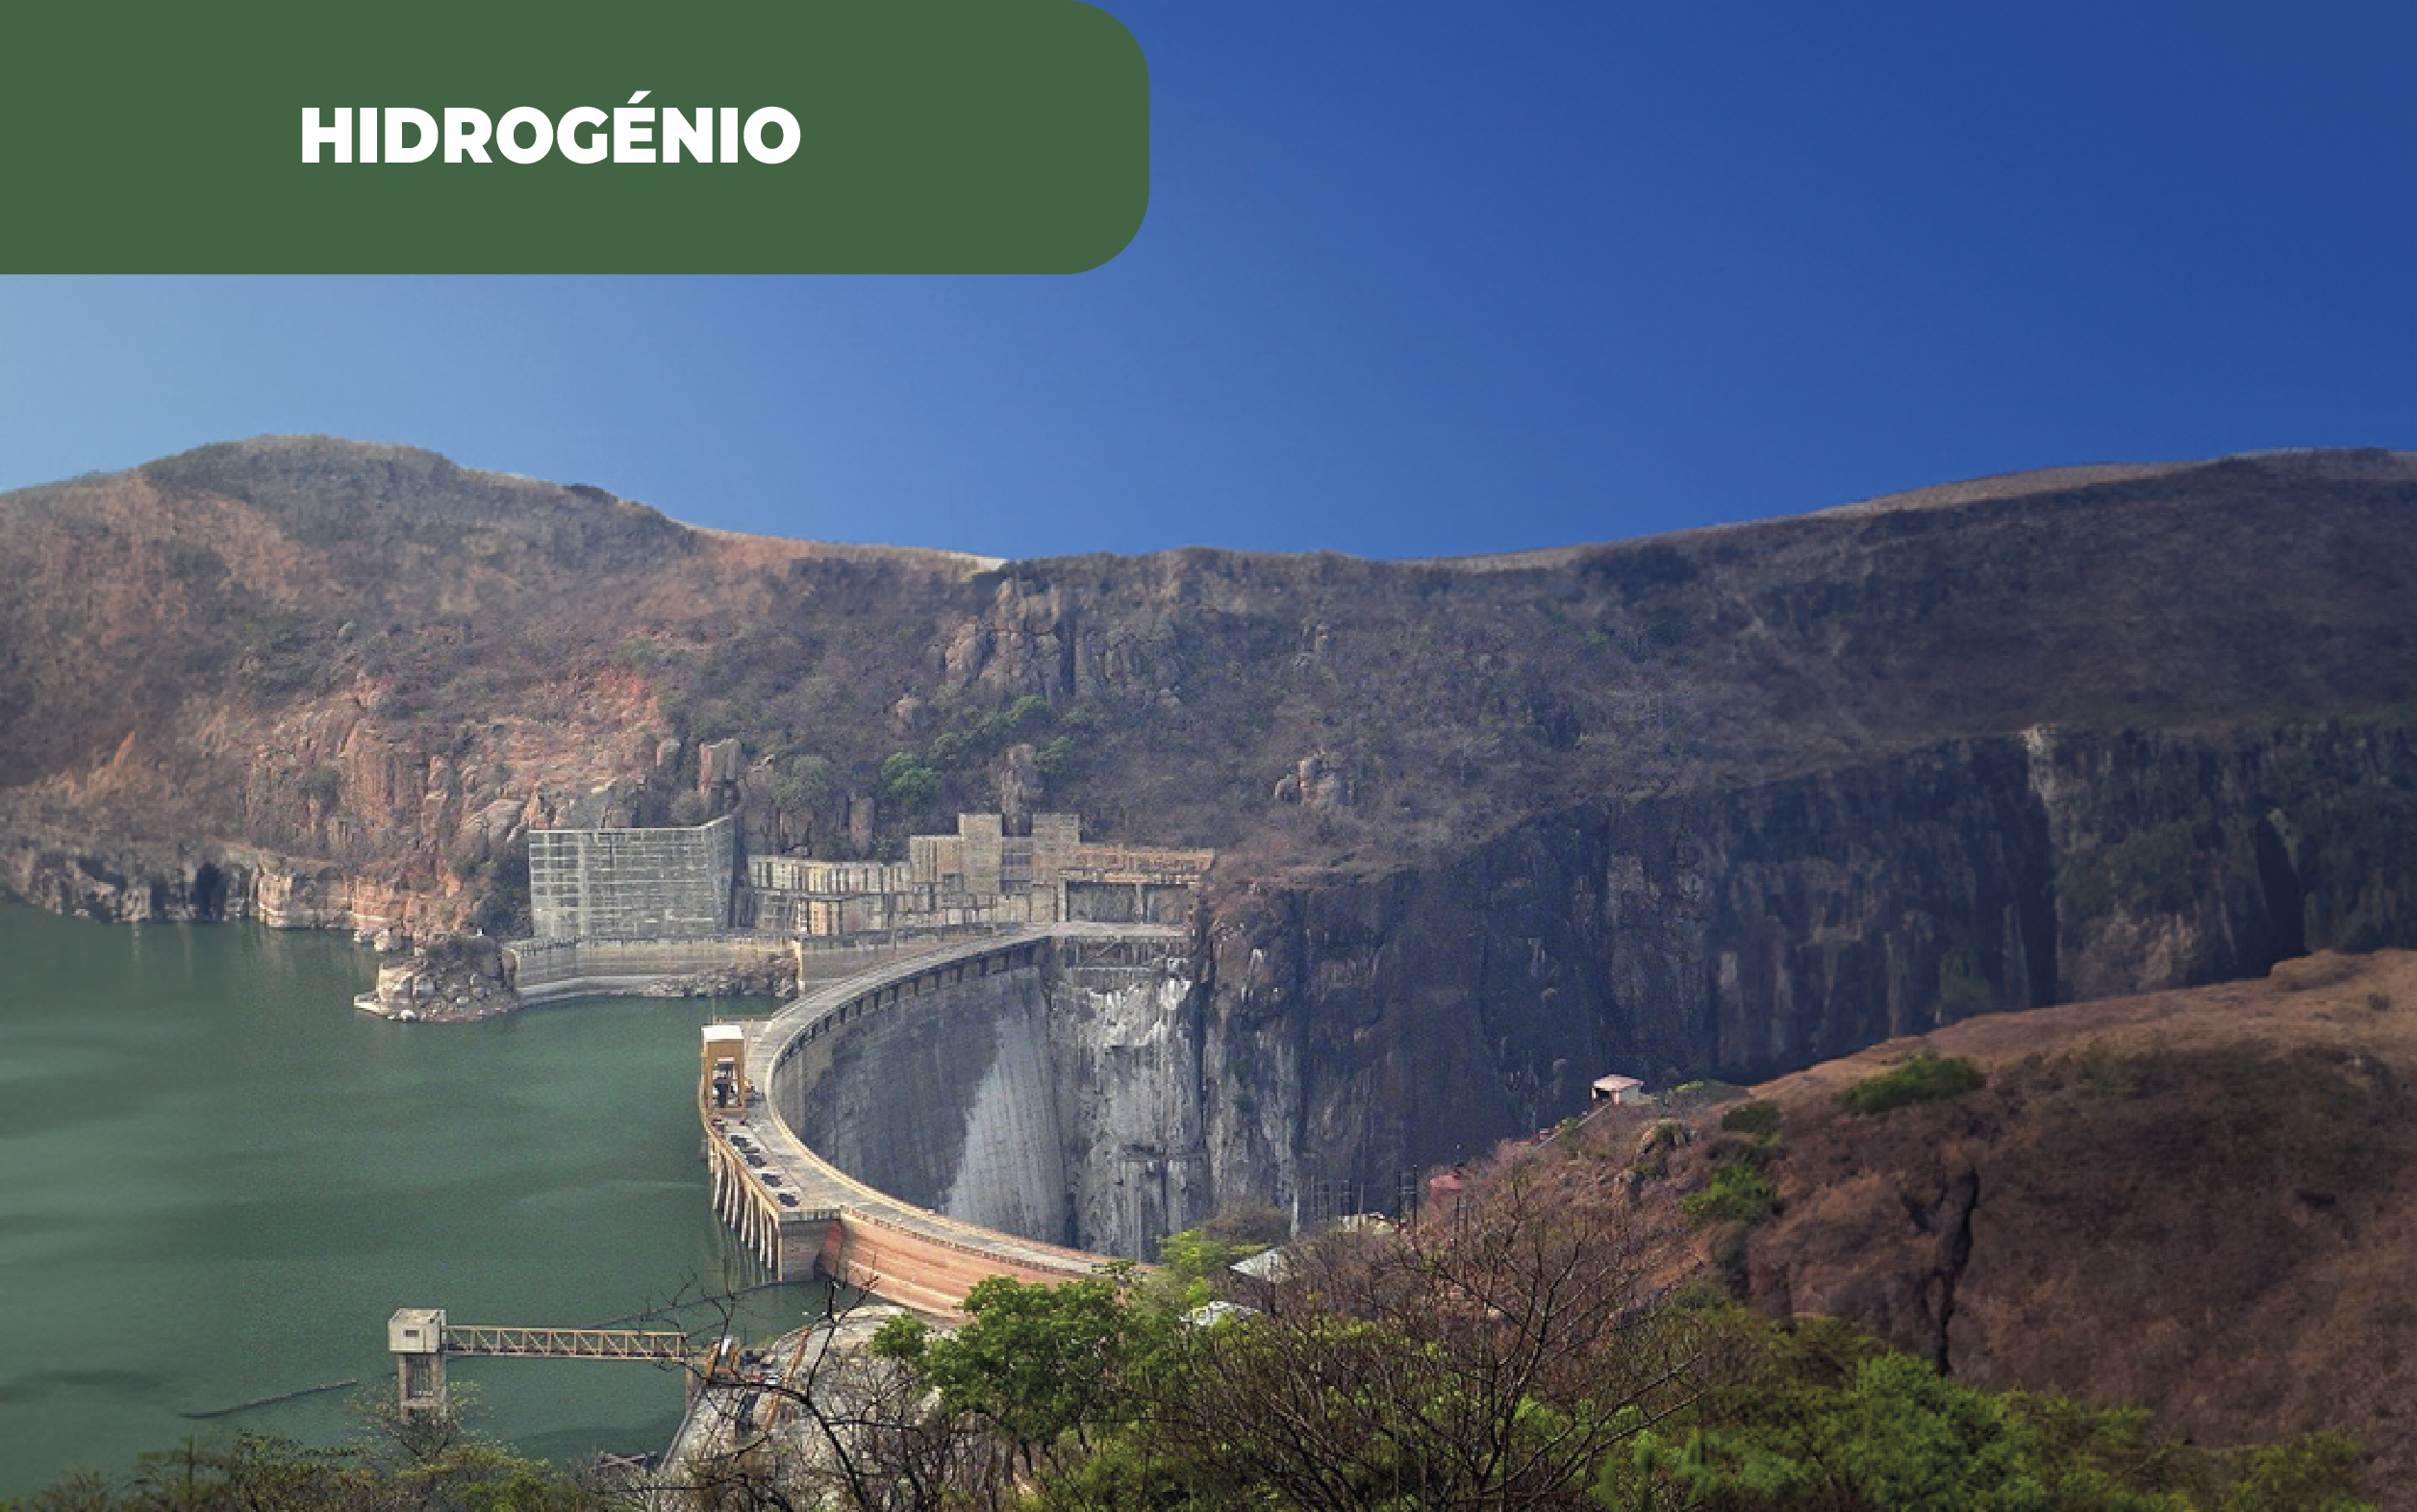 Fotografia colorida da barragem moçambicana de Cahora Bassa. Moçambique entra na produção de hidrogénio, querendo aproveitar os vários recursos do país, incluindo a energia elétrica.